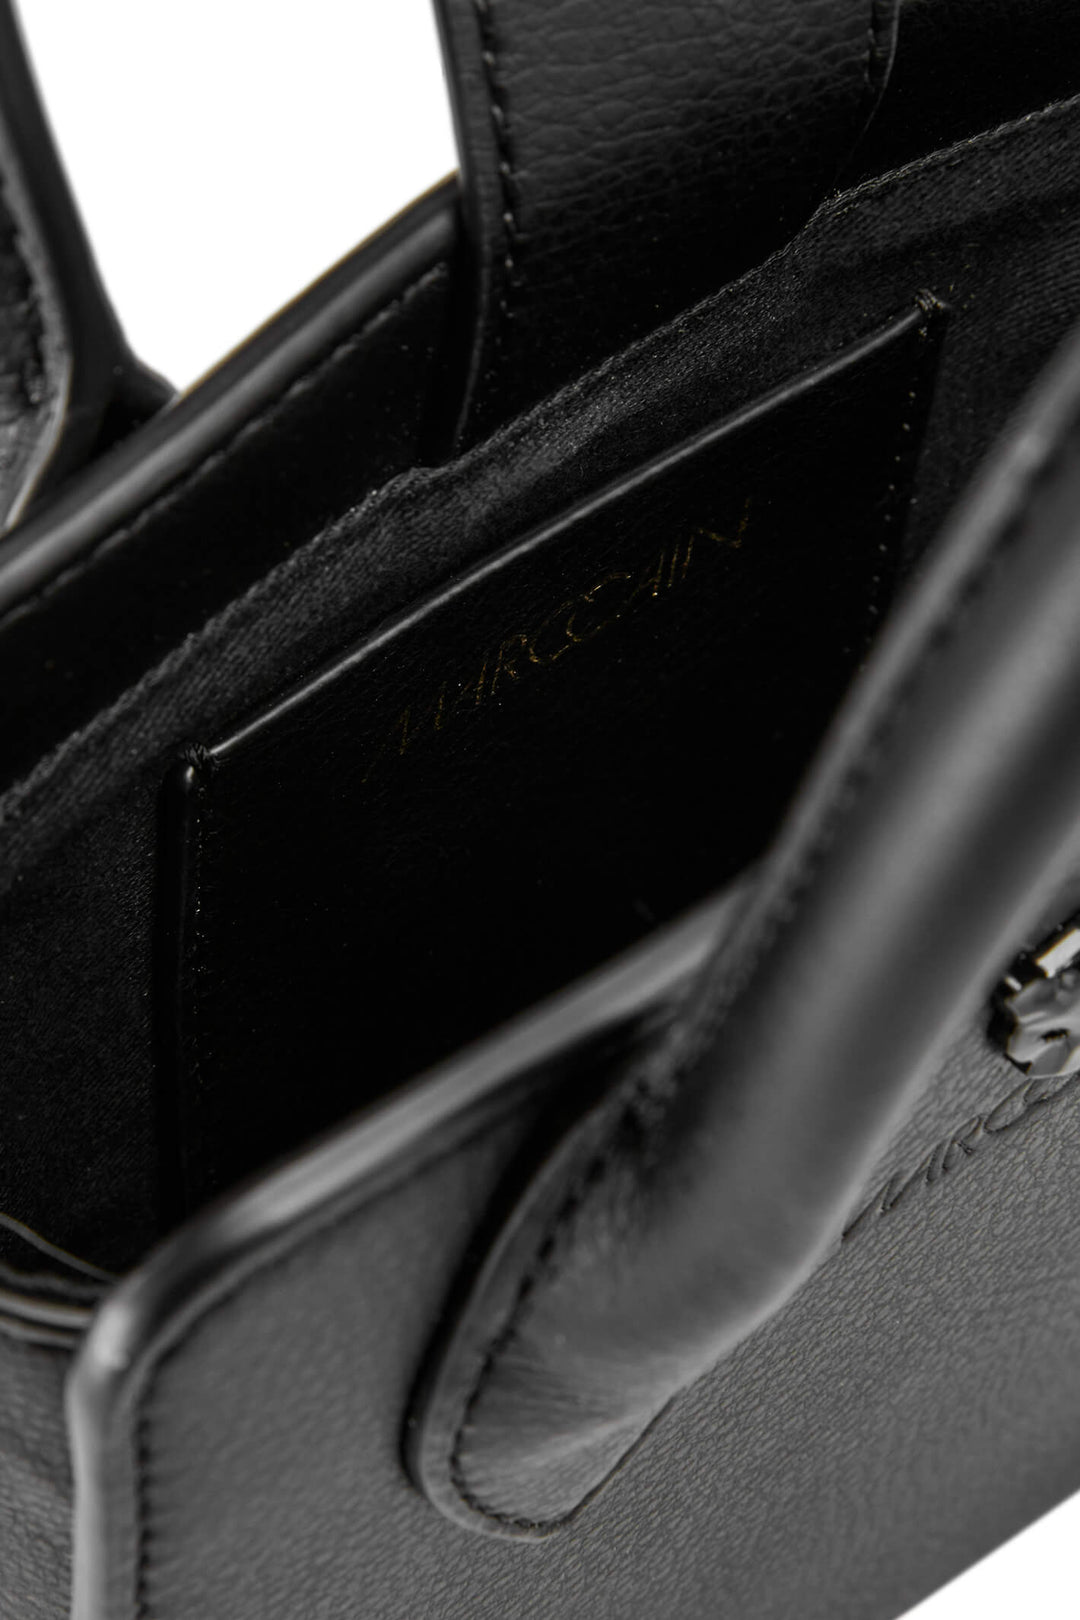 Marc Cain TB TM.03 L01 900 Black Leather Bag - Olivia Grace Fashion